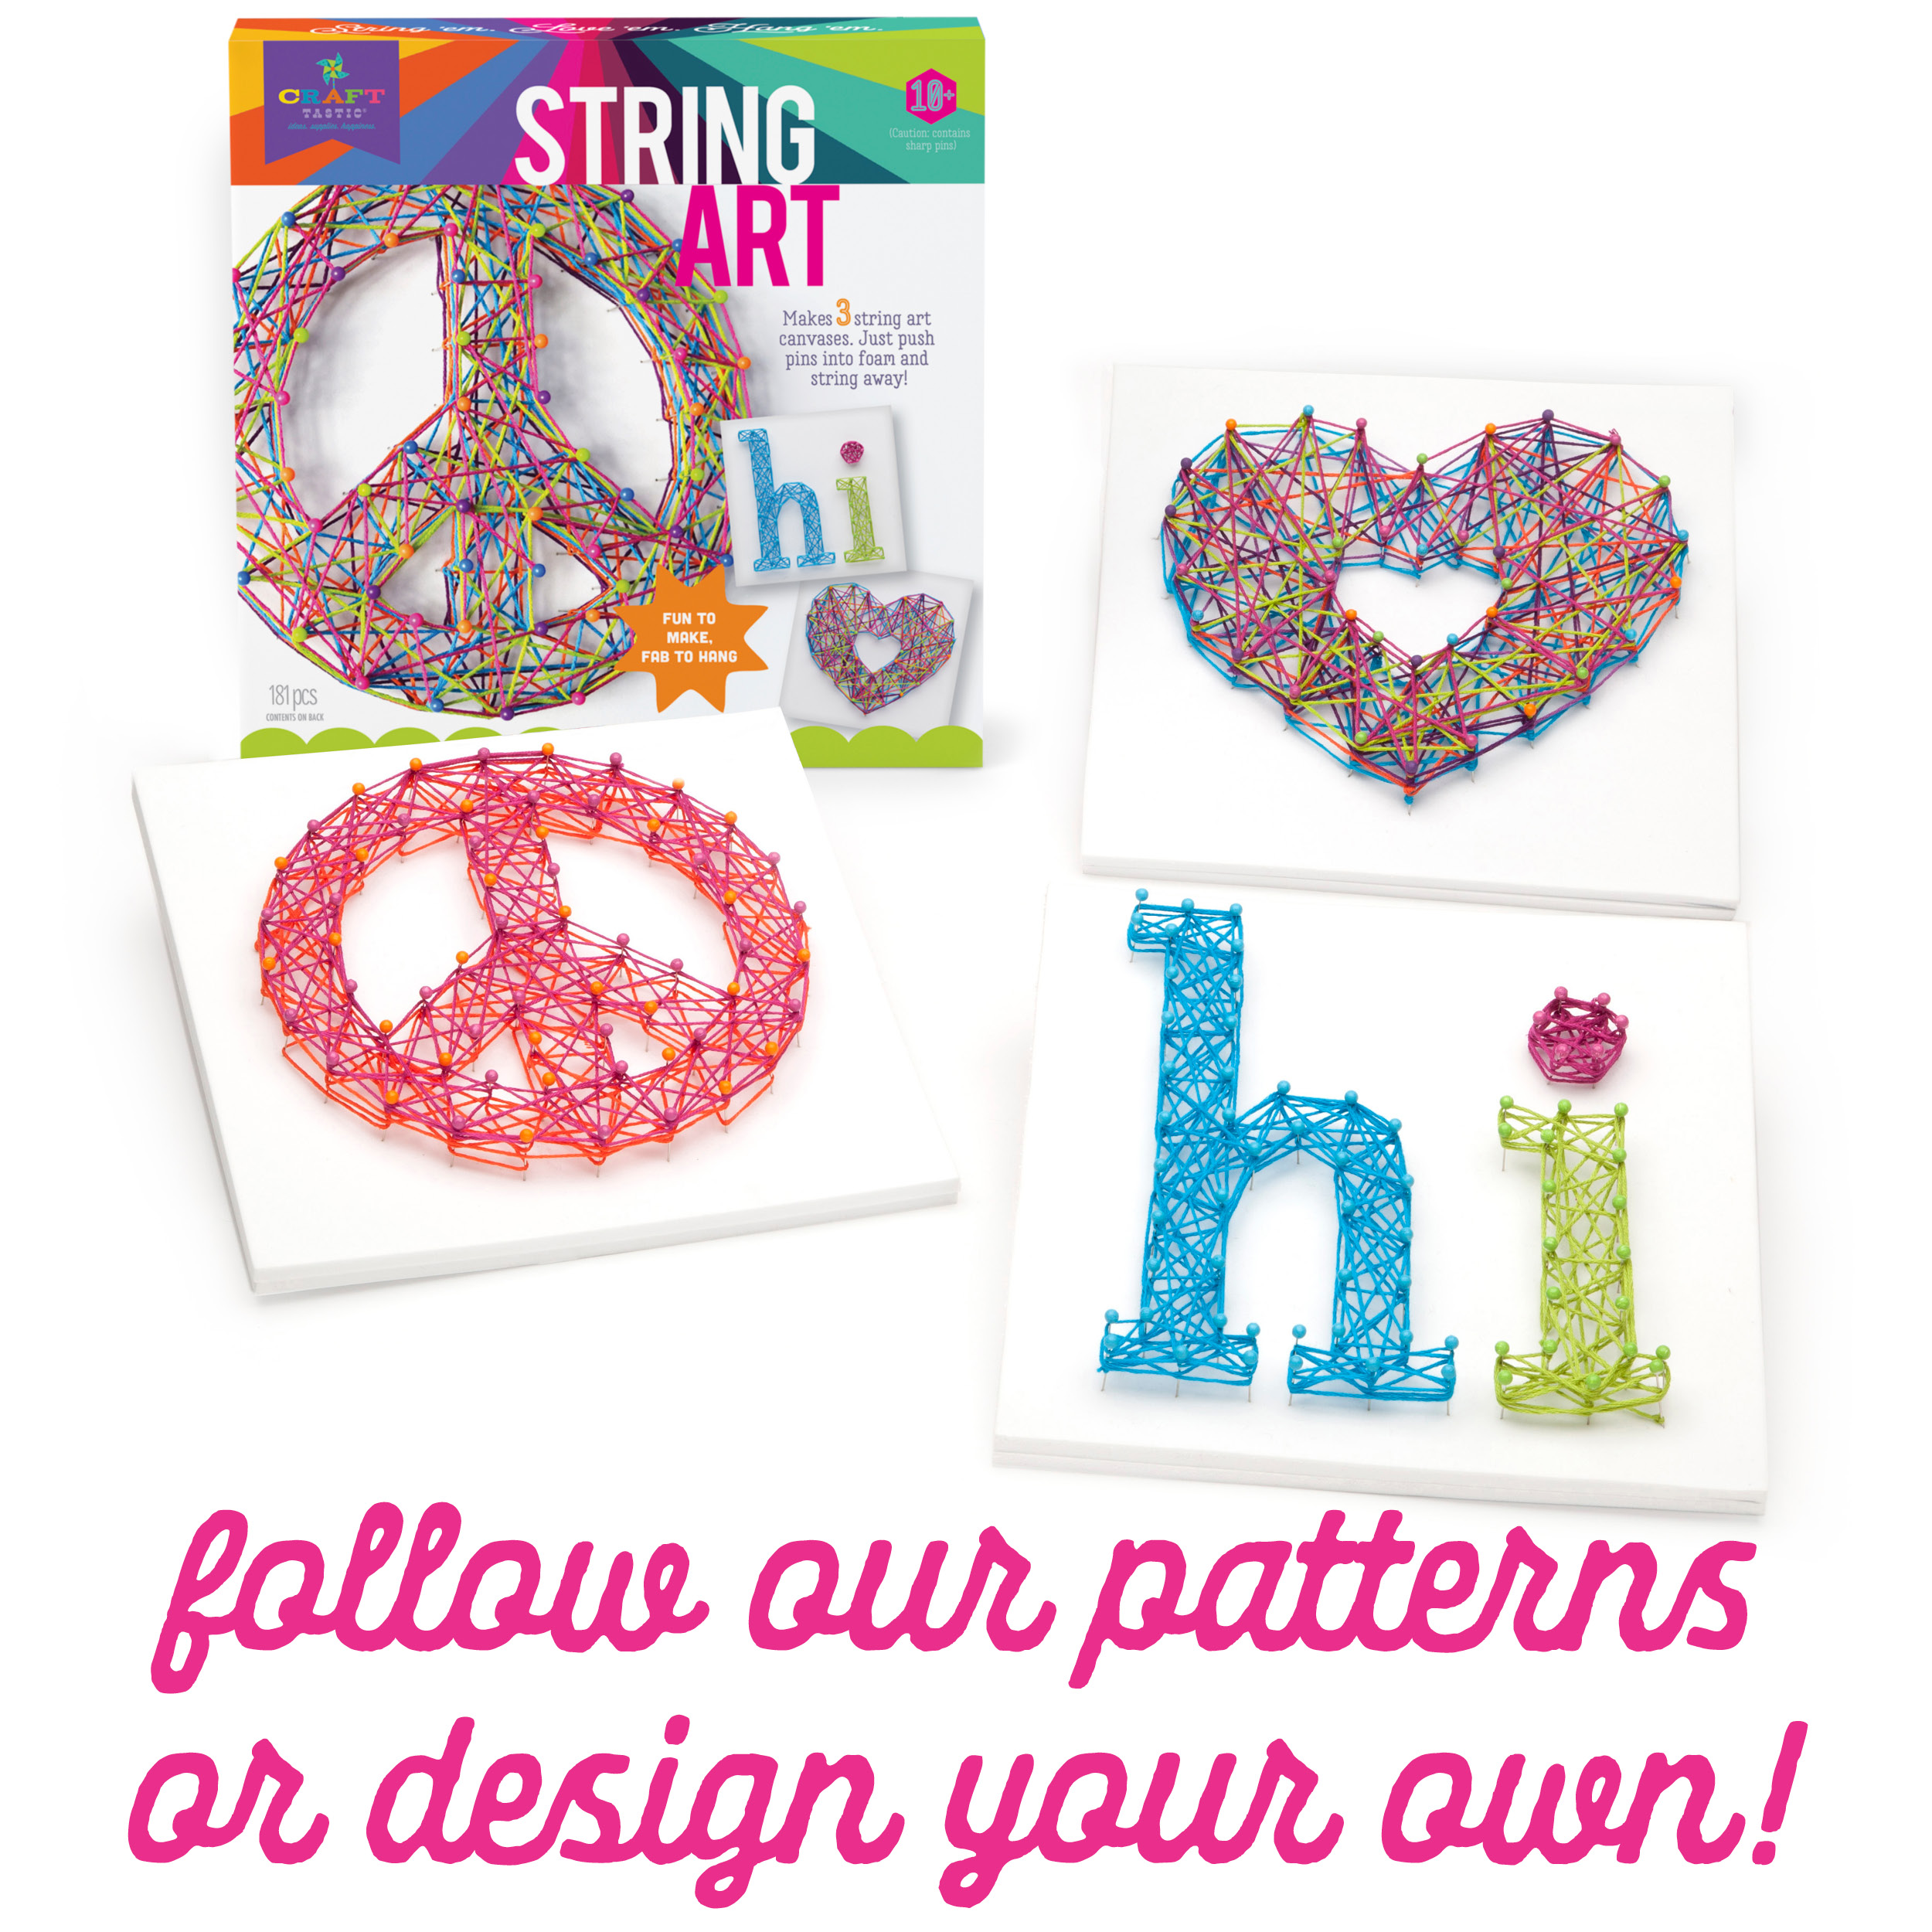 3D String Art Kit for Kids,Christmas Birthday Gifts for 8 9 10 11